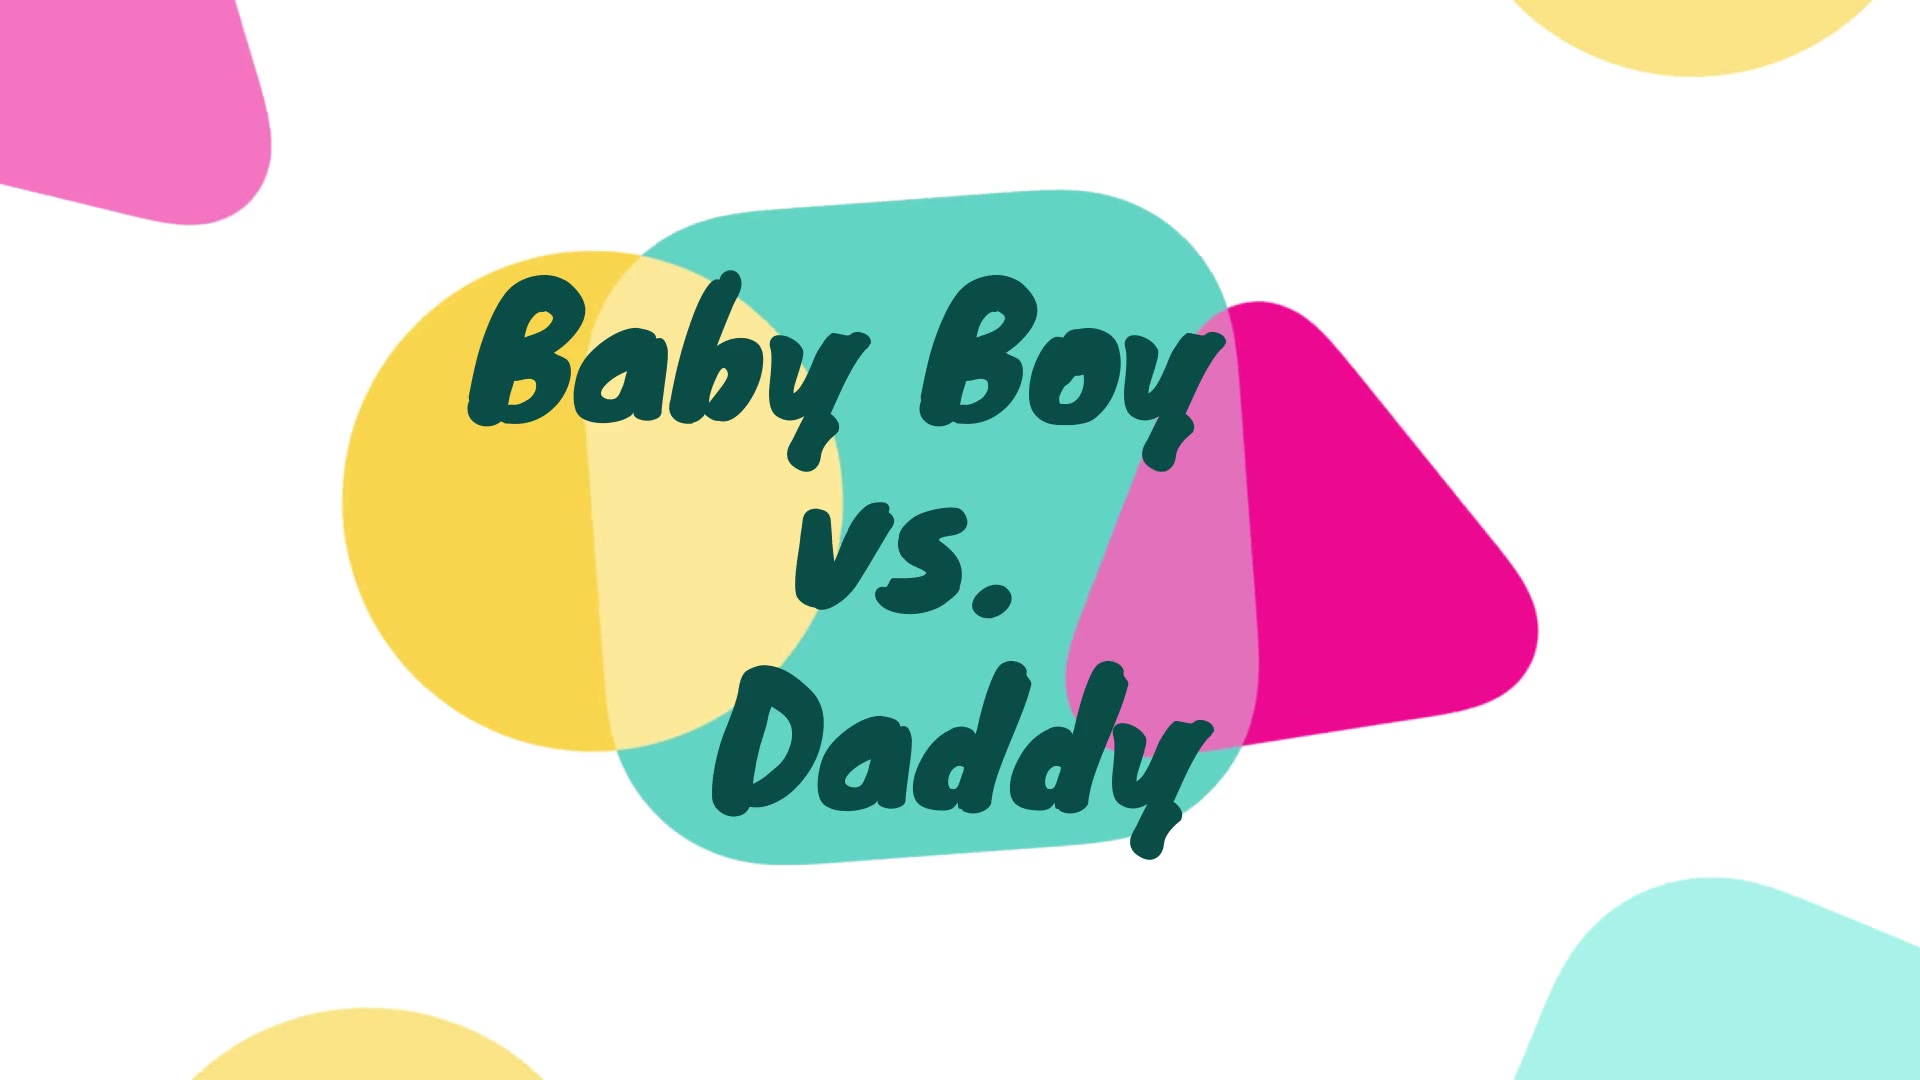 Baby Boy vs. Daddy 6